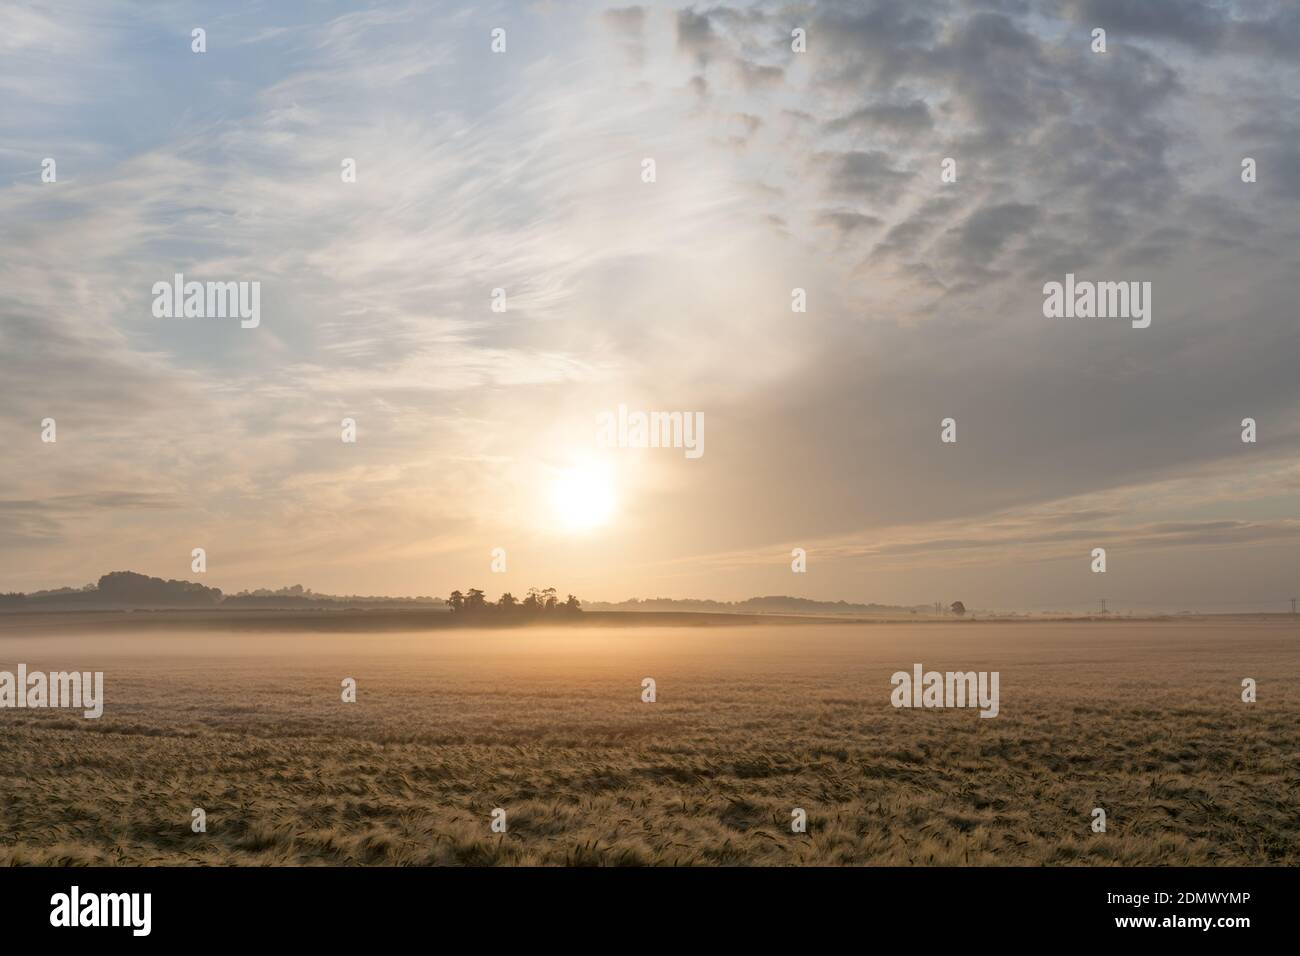 Sunrise over barley fields, Stapleford, Cambridgeshire, UK Stock Photo